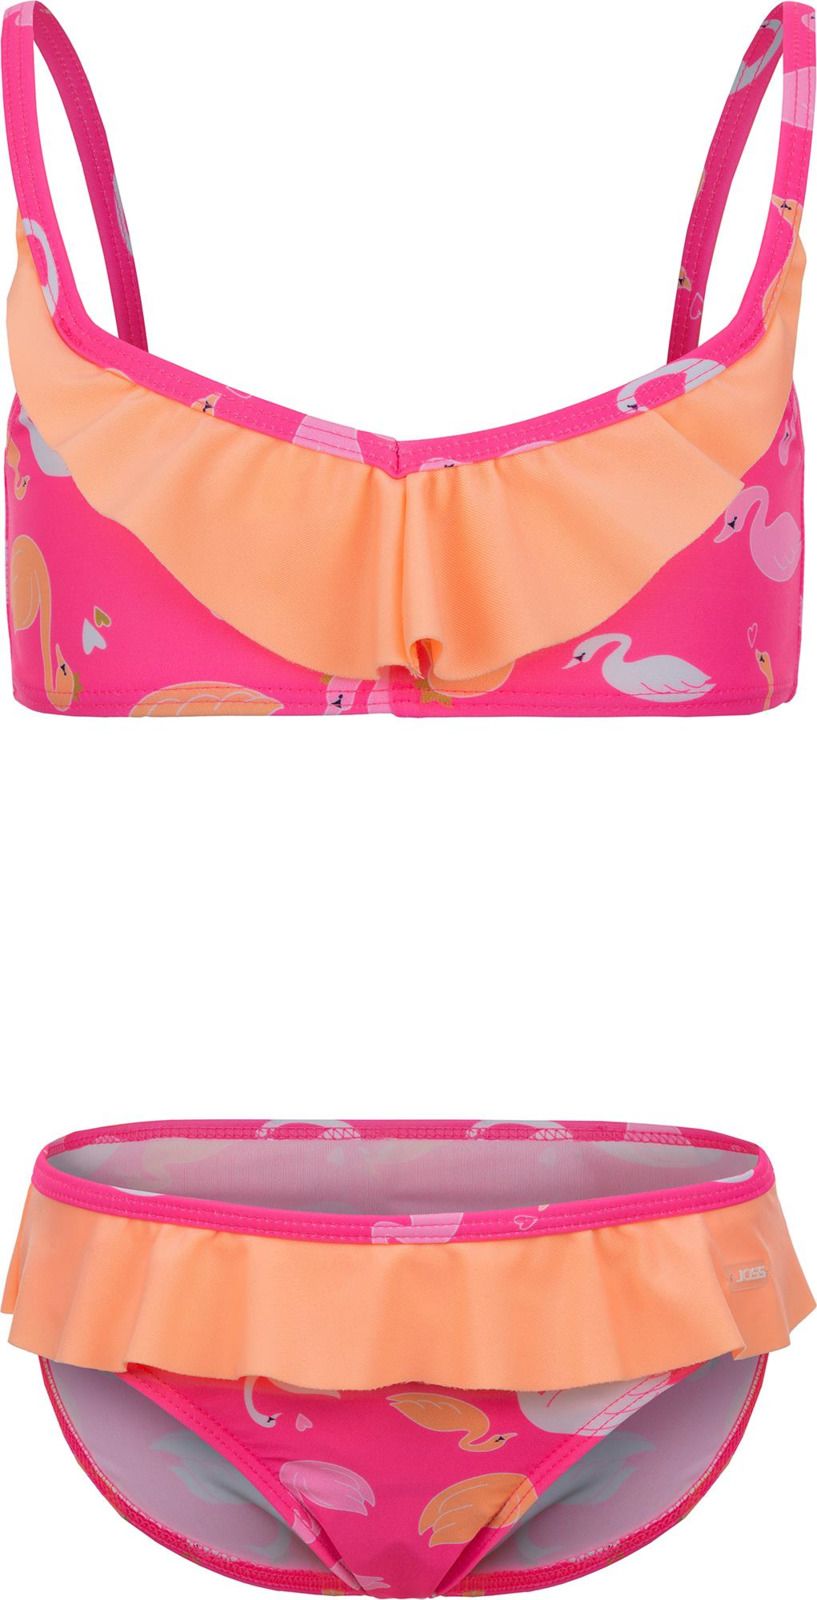     Joss Girls' Swimsuit, : -. GSB07S6-X0.  104